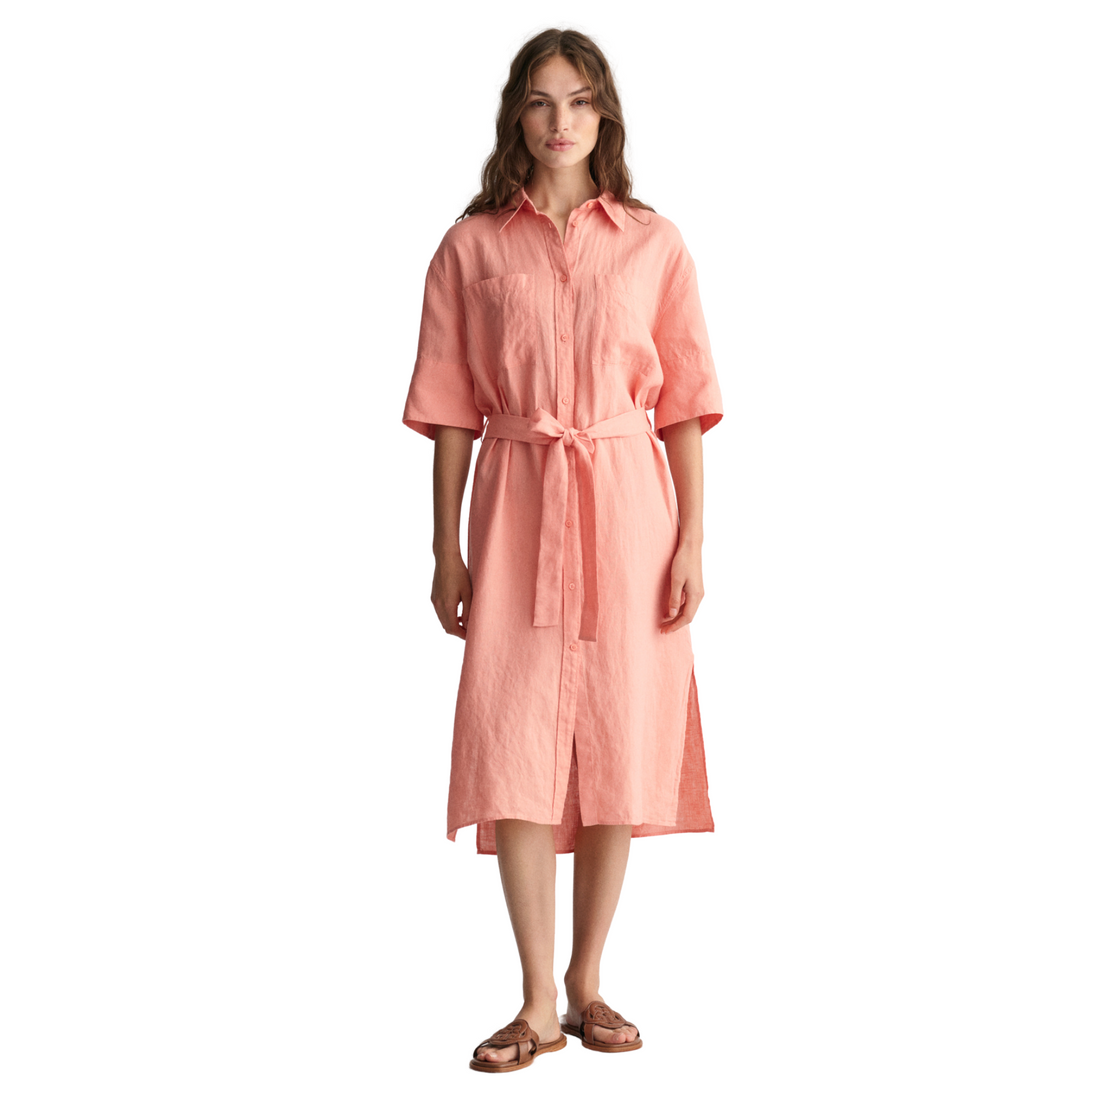 Linen Short Sleeve Shirt Dress Peachy Pink